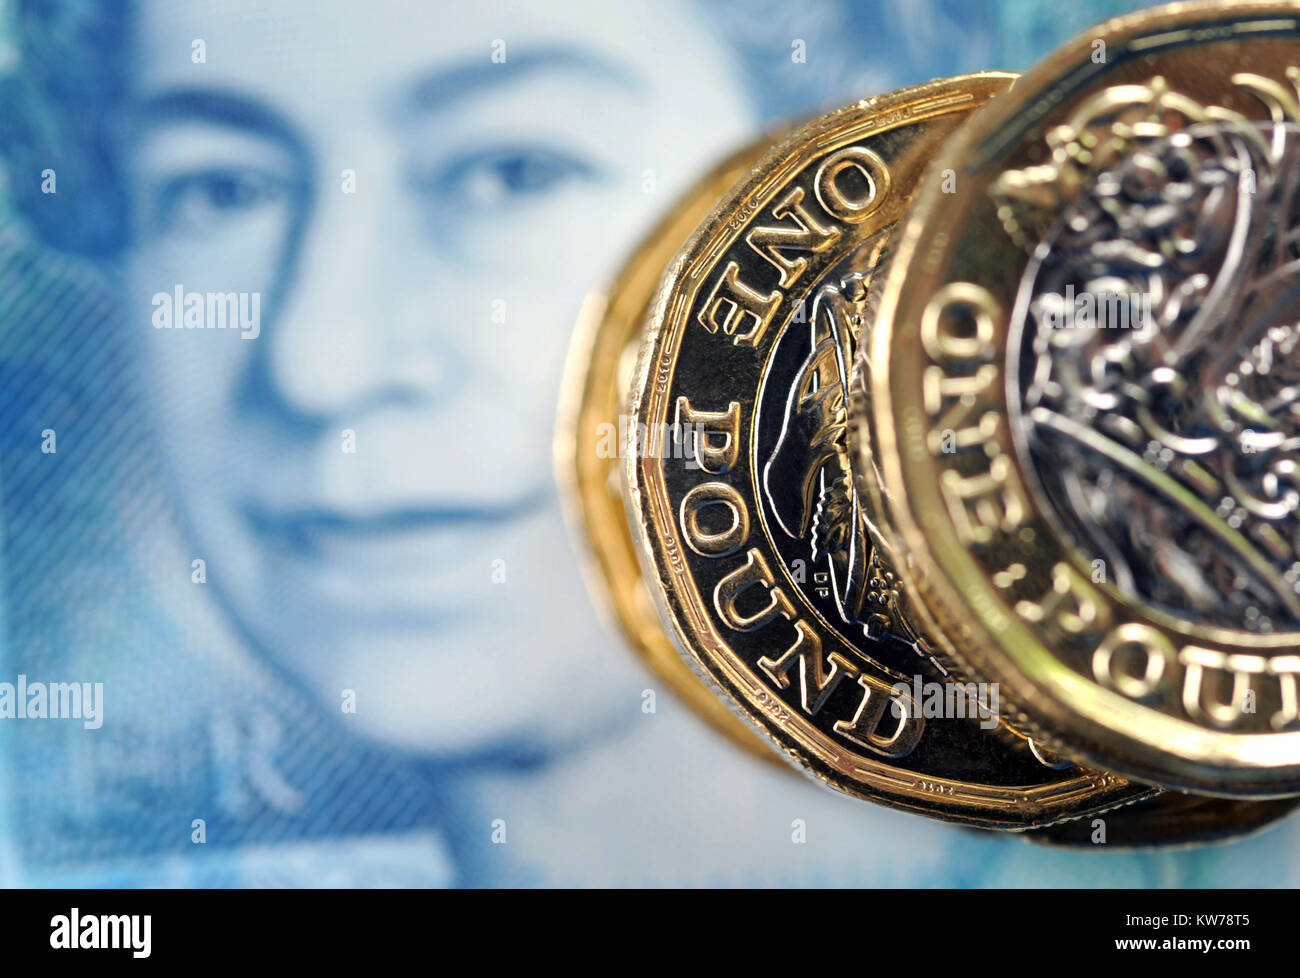 NEW BRITISH una libbra di monete con nuovo £ 5 NOTA RE FINANCE BREXIT redditi salari ipoteche ETC REGNO UNITO Foto Stock